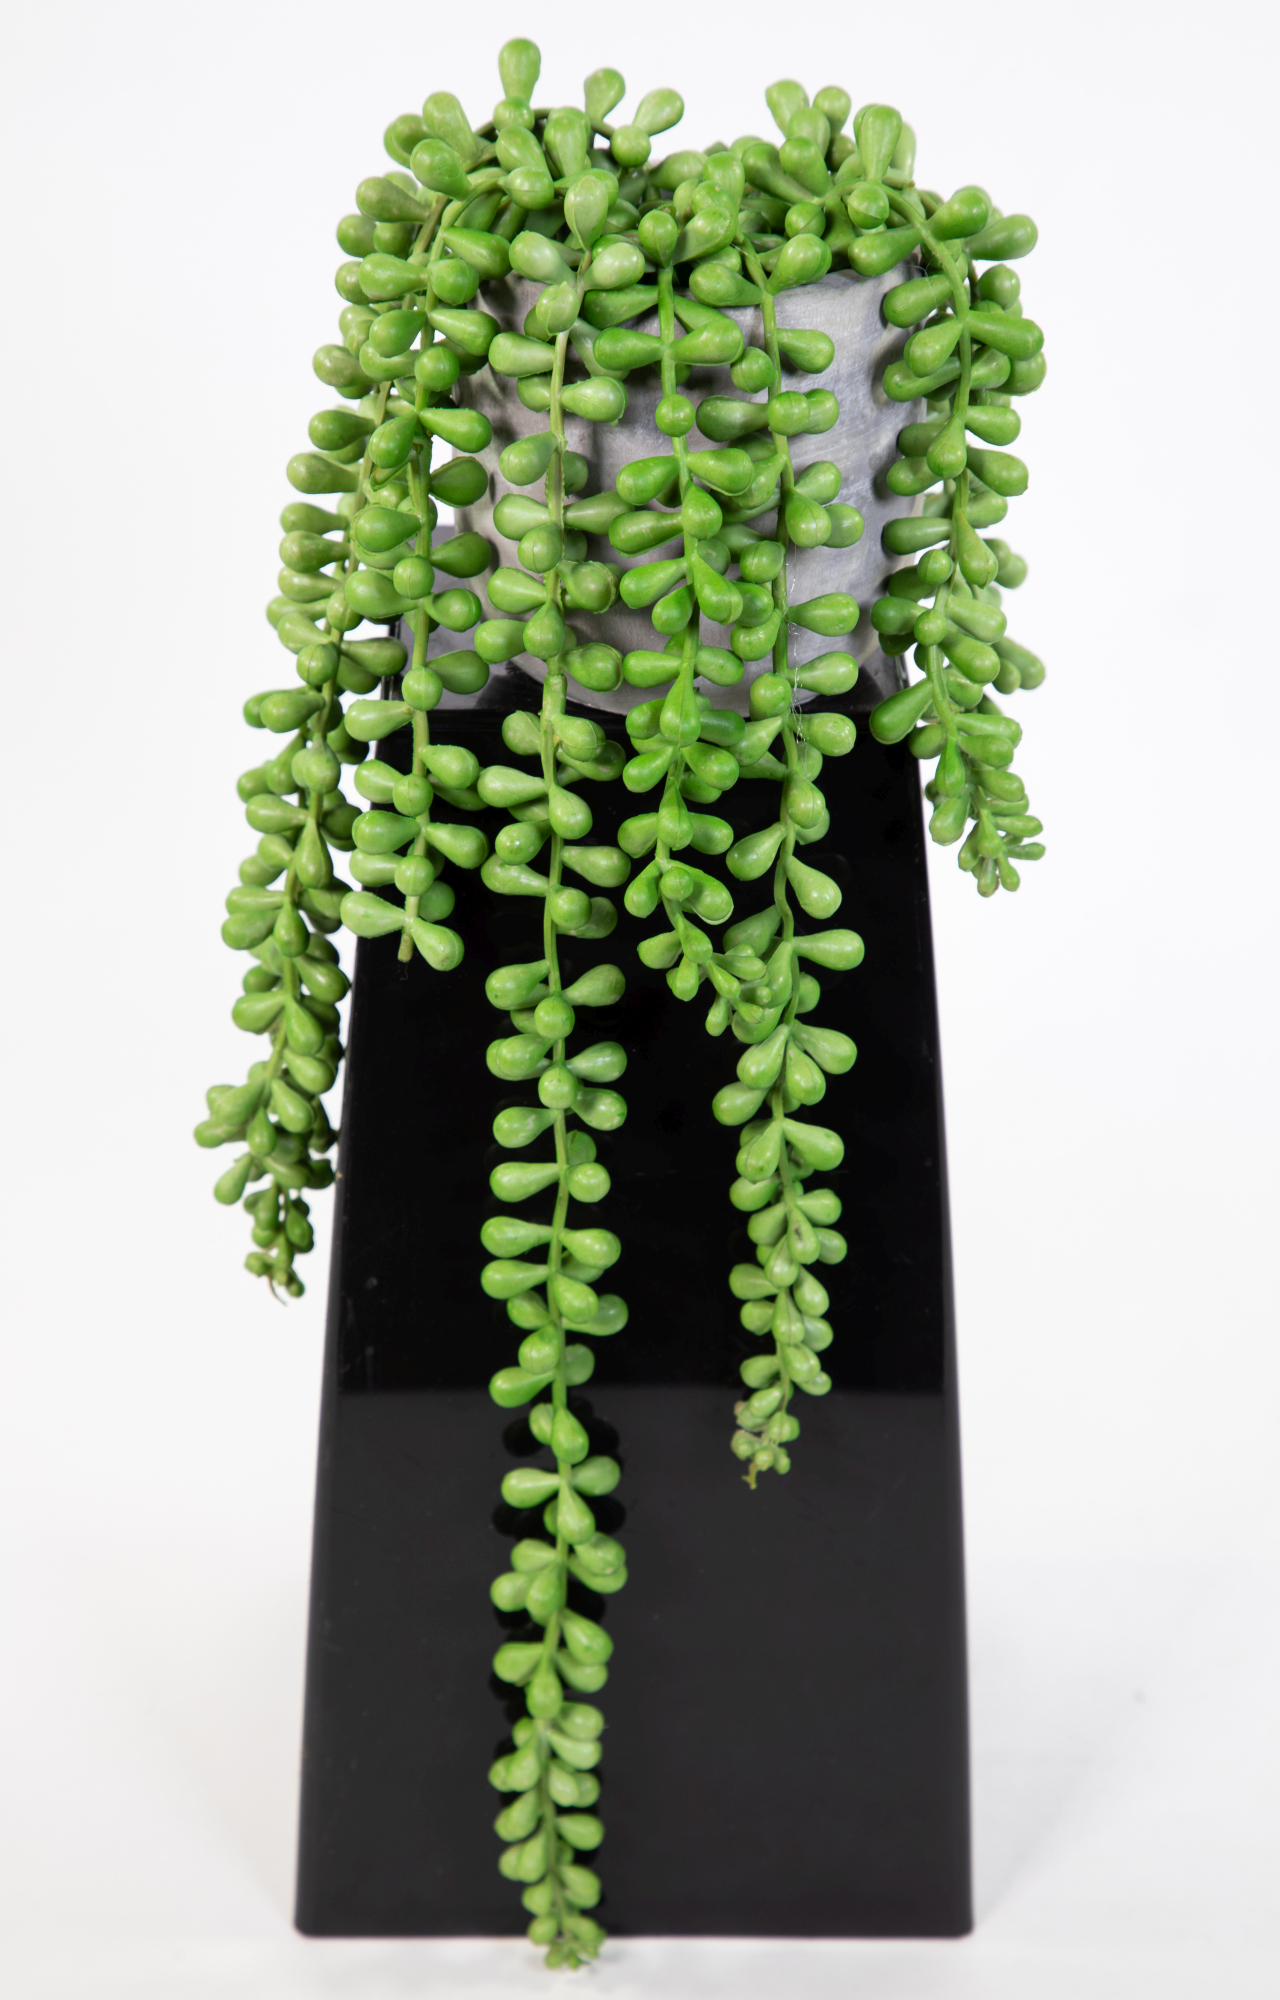 Sedumhänger 12x15x40cm im grauen Zemettopf GA künstliche Pflanzen Kunstpflanzen Dekopflanzen